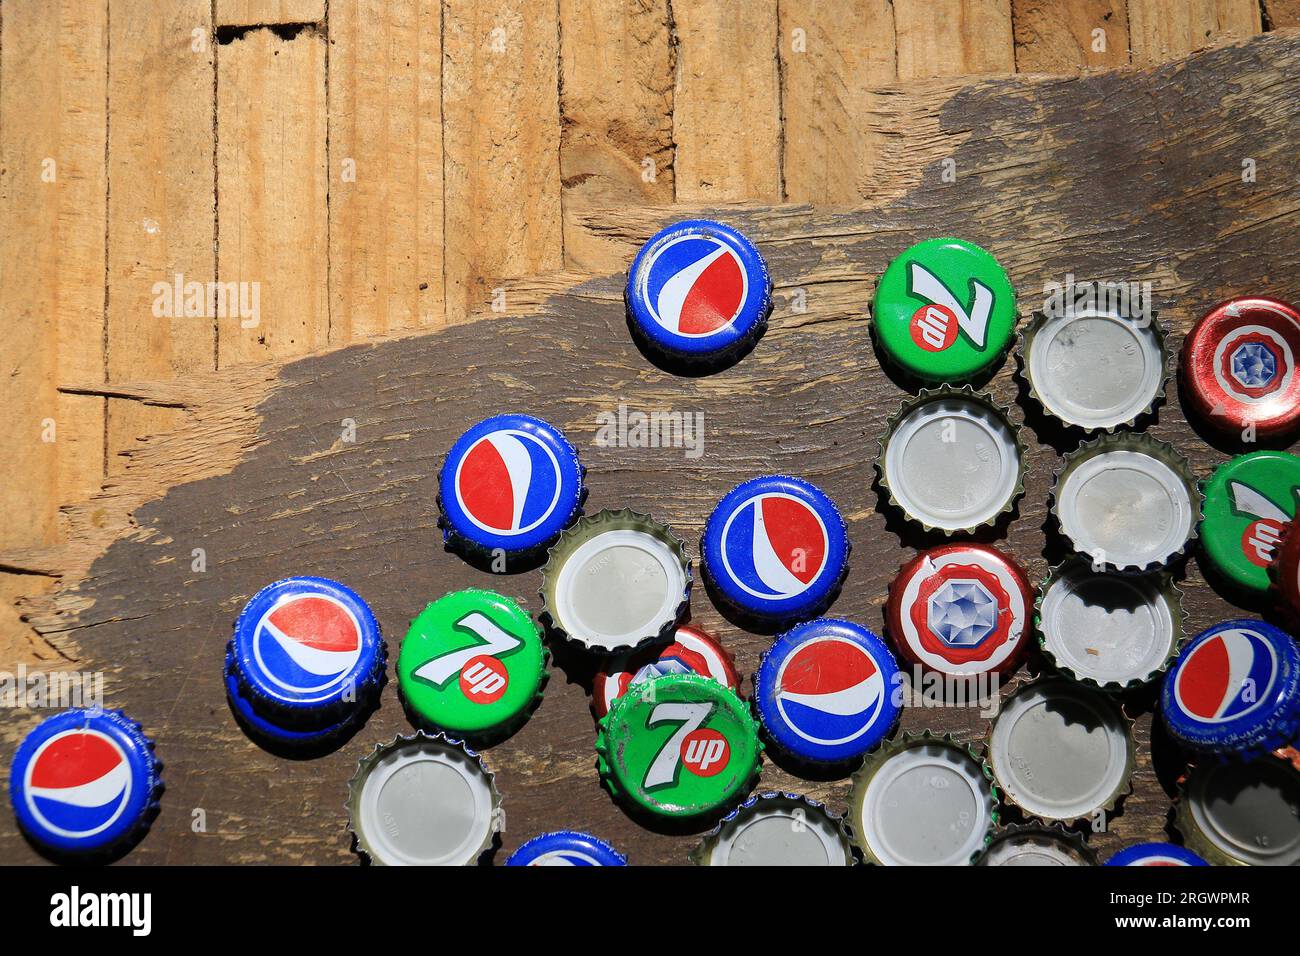 Zgharta, Libano - 28 maggio 2022: Scartati i tappi di birra Pepsi Cola, 7Up e Almaza su un tavolo di legno. Foto Stock